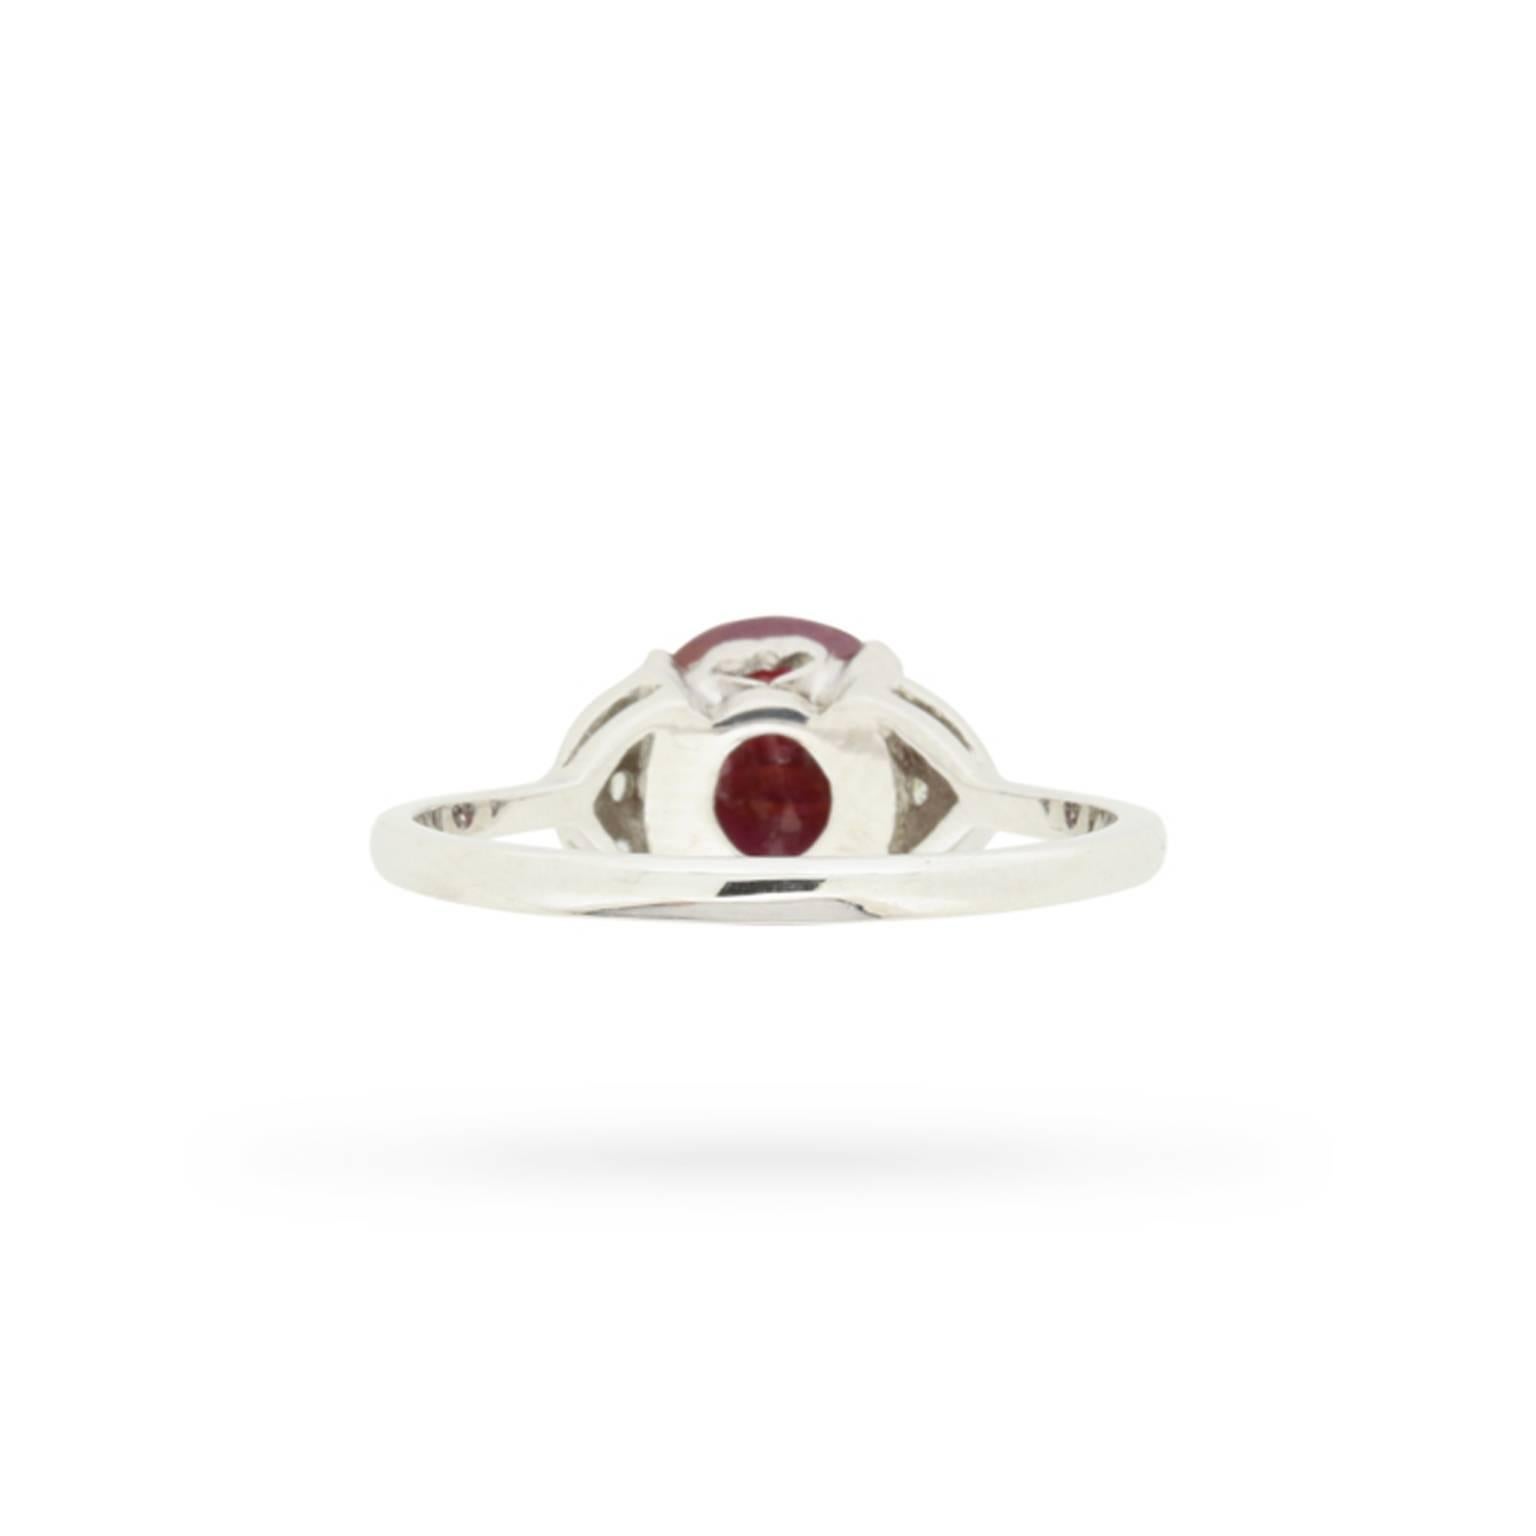 Women's or Men's 2.03 Carat GIA Certified Ruby Diamond Ring circa 1930s